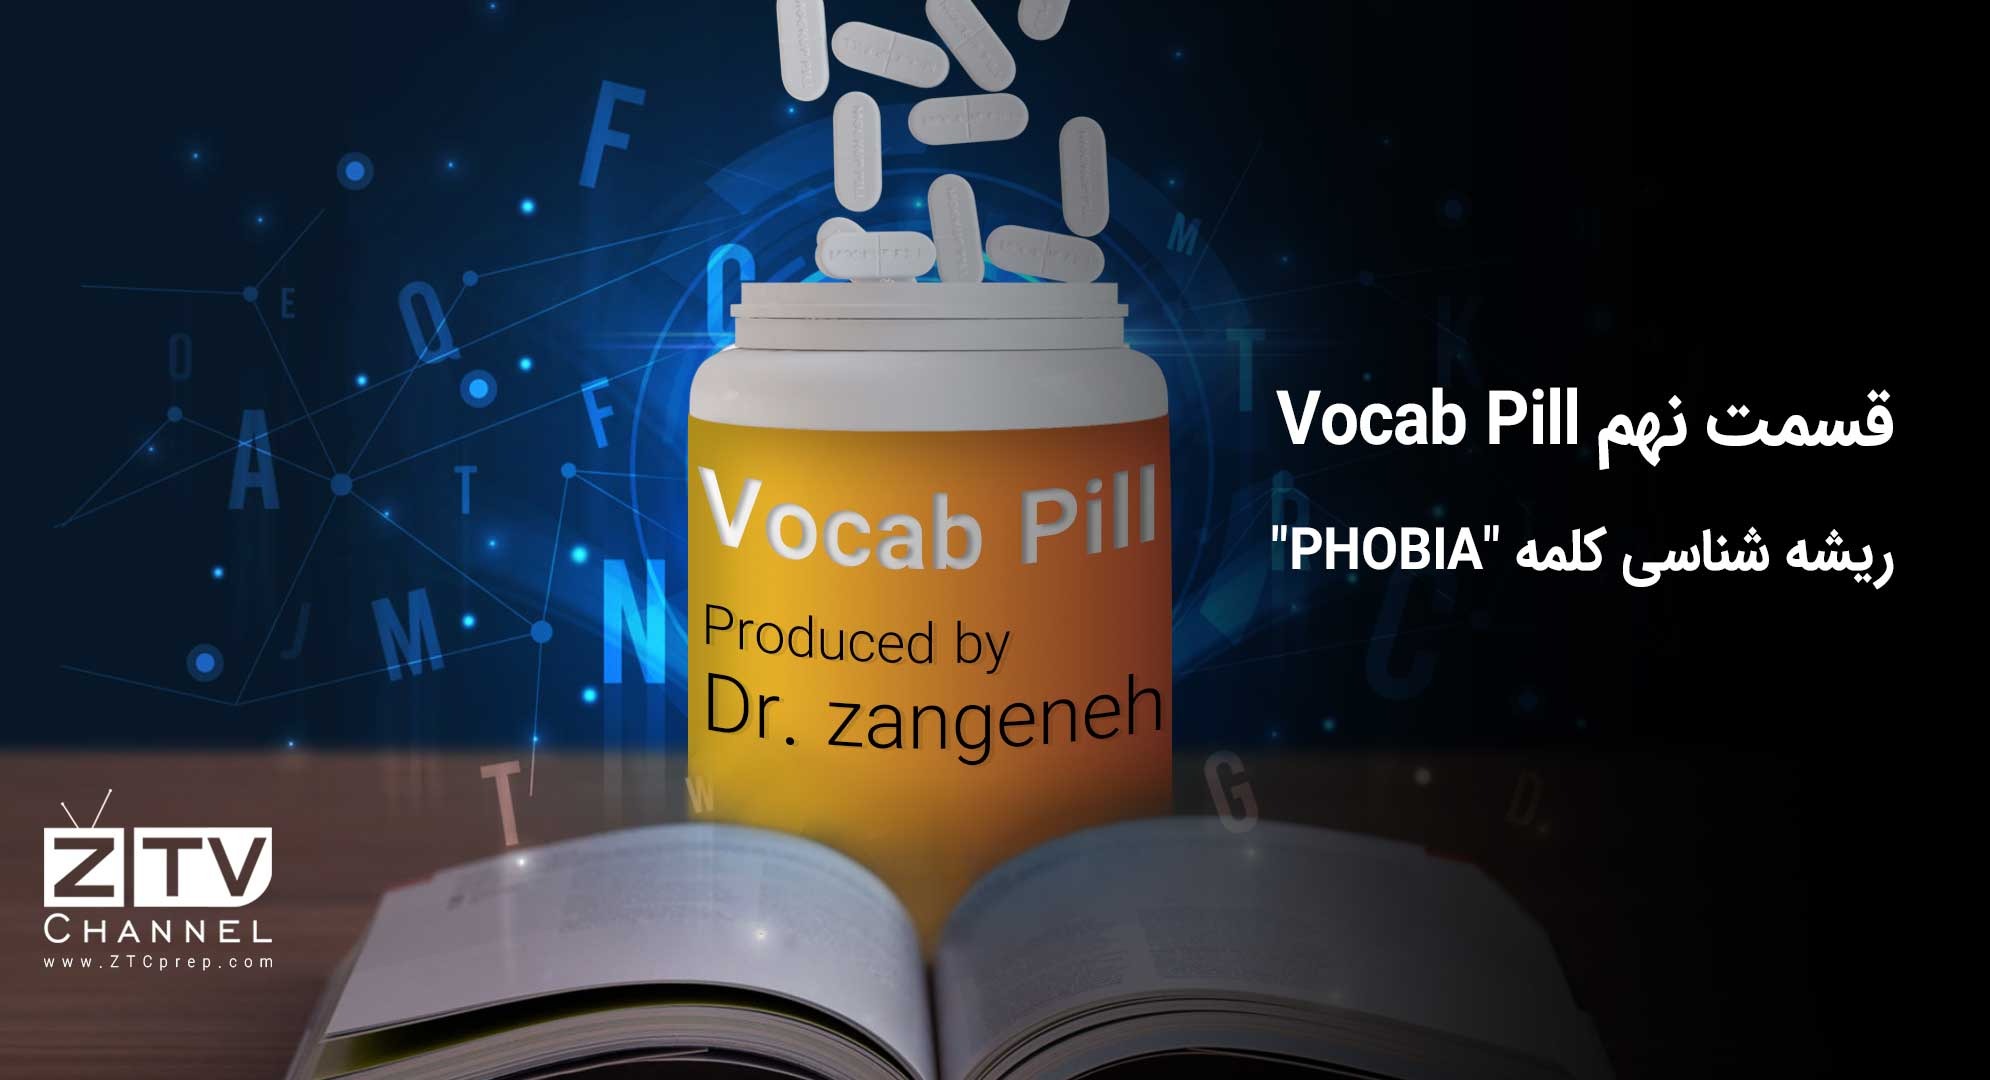 قسمت نهم Vocab Pill-ریشه شناسی کلمه PHOBIA